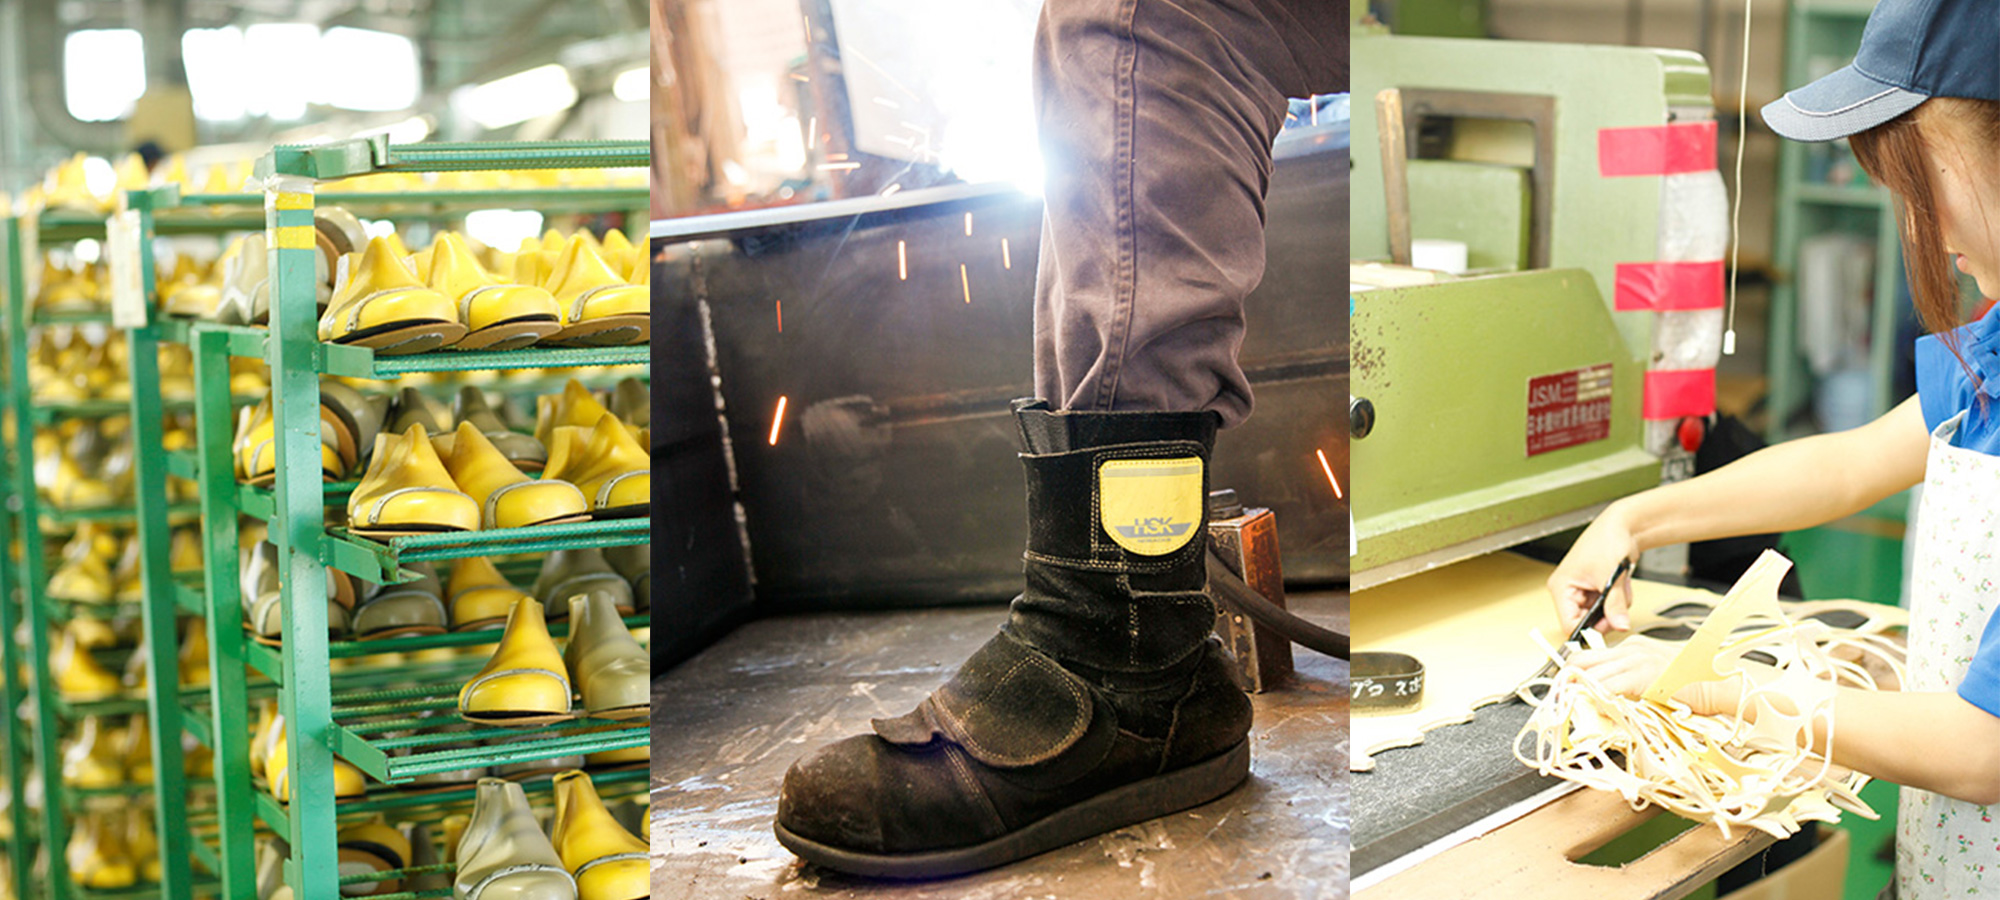 株式会社ノサックス | 1924年、広島で初めて作業靴を作りそれから ...